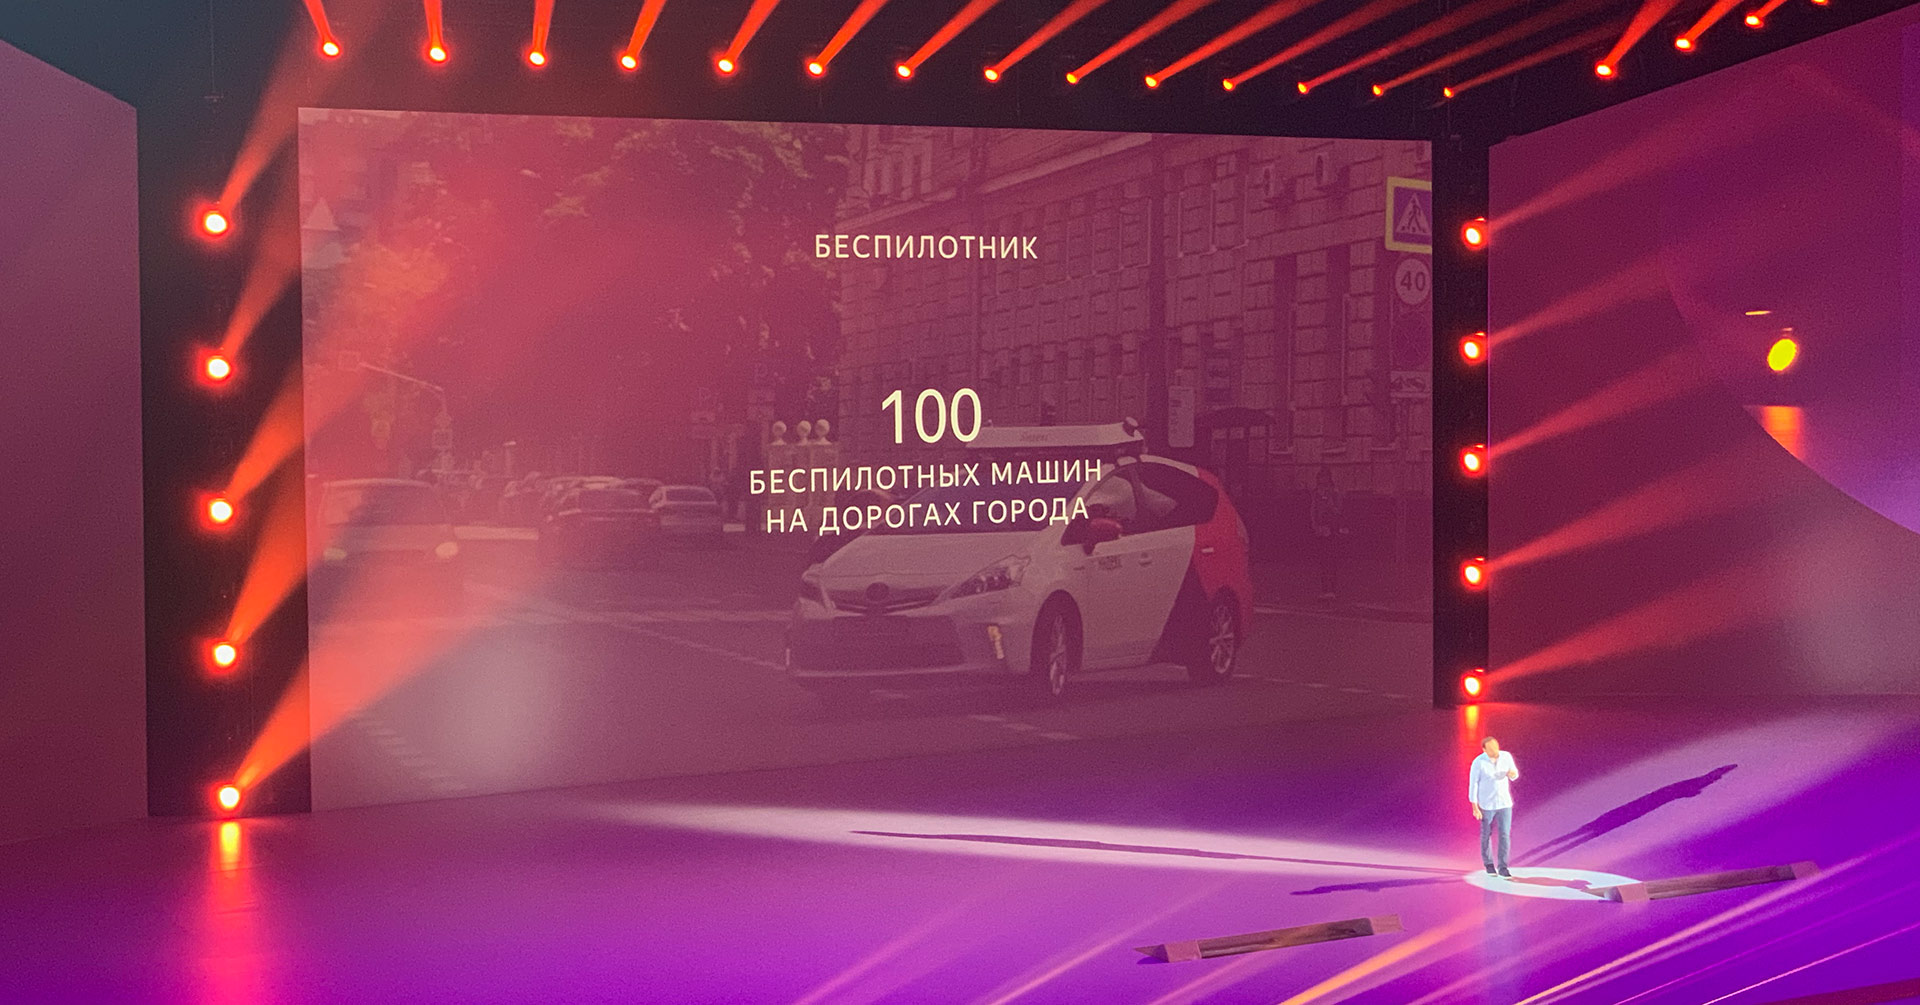 Главное с YaC 2019: сотня беспилотников на дорогах, Яндекс.Модуль, еда, умный дом - 2